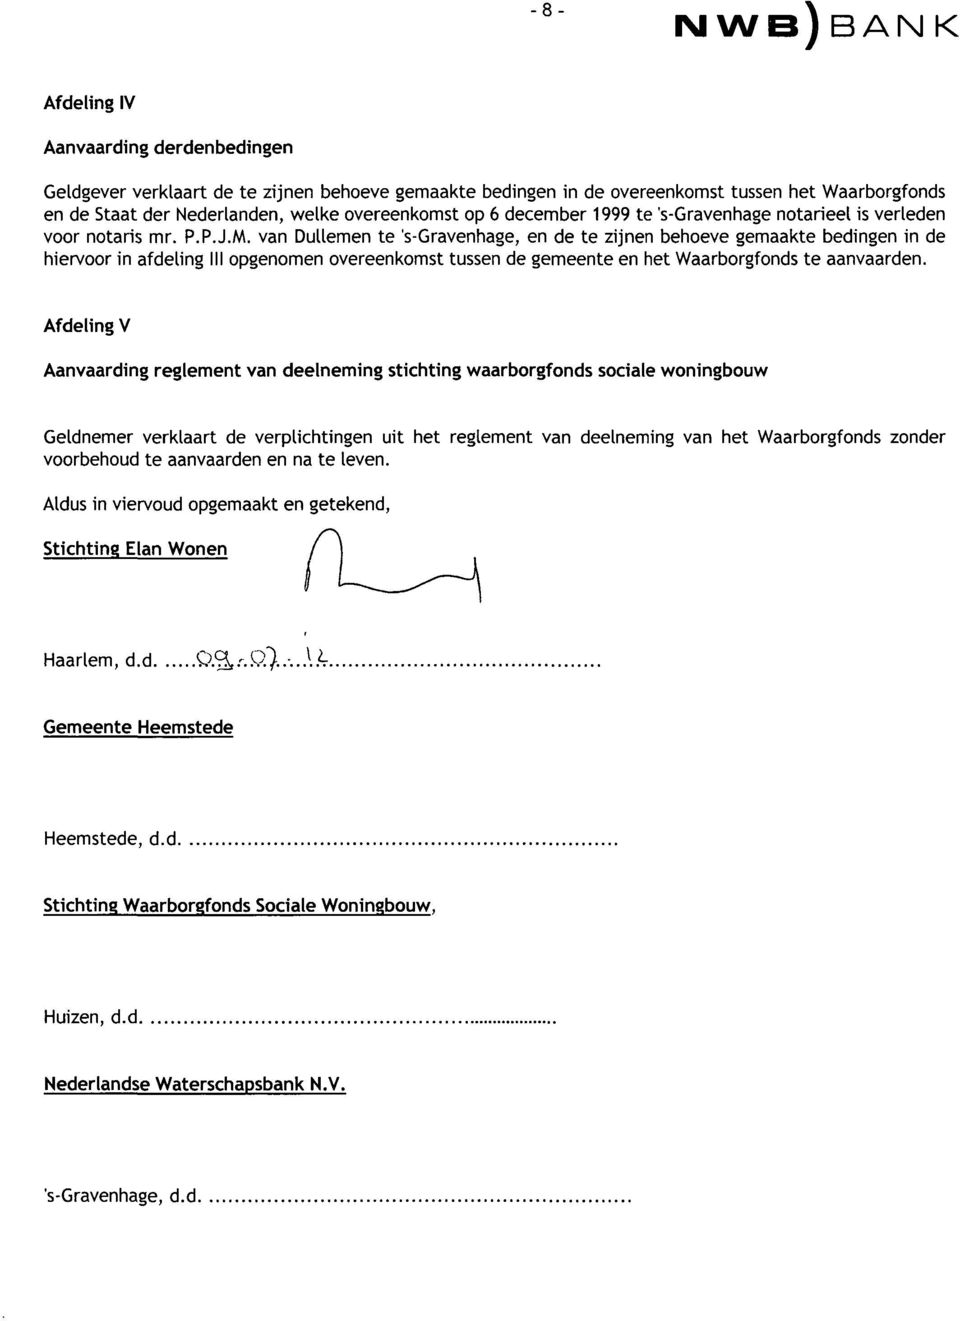 M, van Dullemen te 's-gravenhage, en de te zijnen behoeve gemaakte bedingen in de hiervoor in afdeling III opgenomen overeenkomst tussen de gemeente en het Waarborgfonds te aanvaarden.